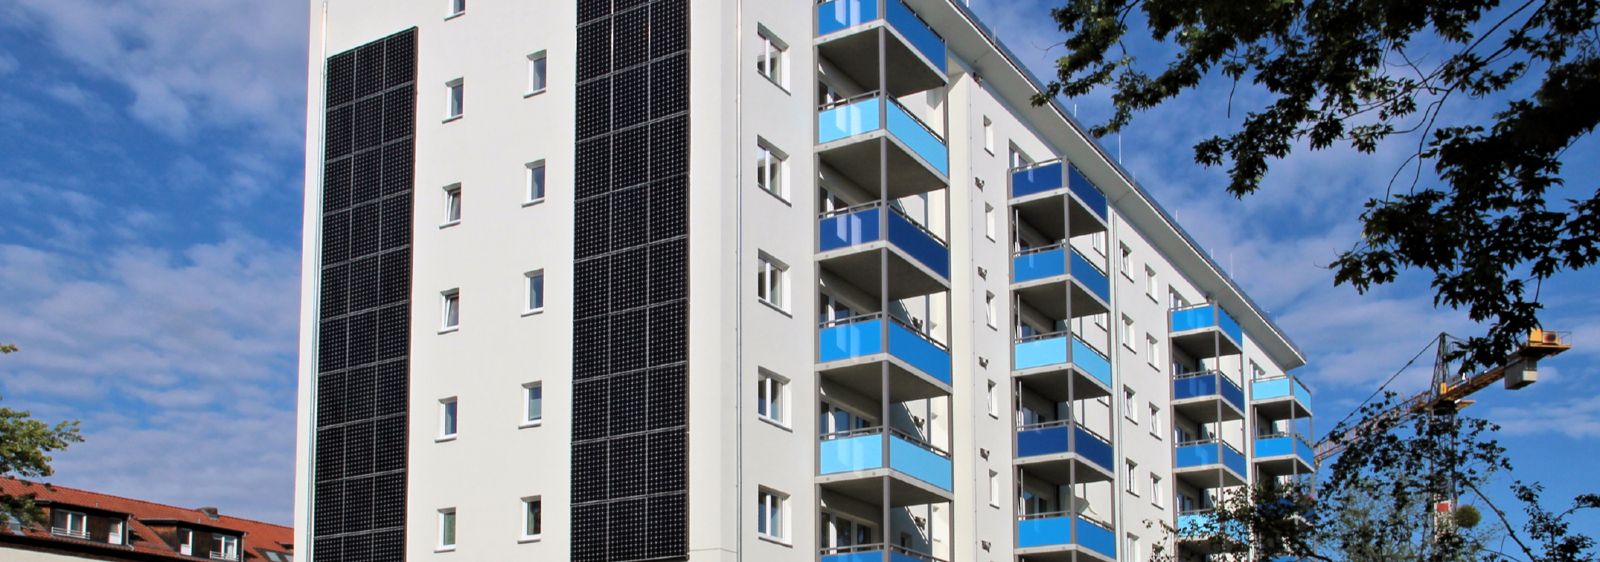 Mit dem „Zukunftshaus“ im Berliner Stadtteil Lankwitz möchte die Wohnbaugesellschaft degewo zeigen, welche Gebäude- und Technikkonzepte sich für ein nahezu klimaneutrales, energieeffizientes Wohnen eignen.